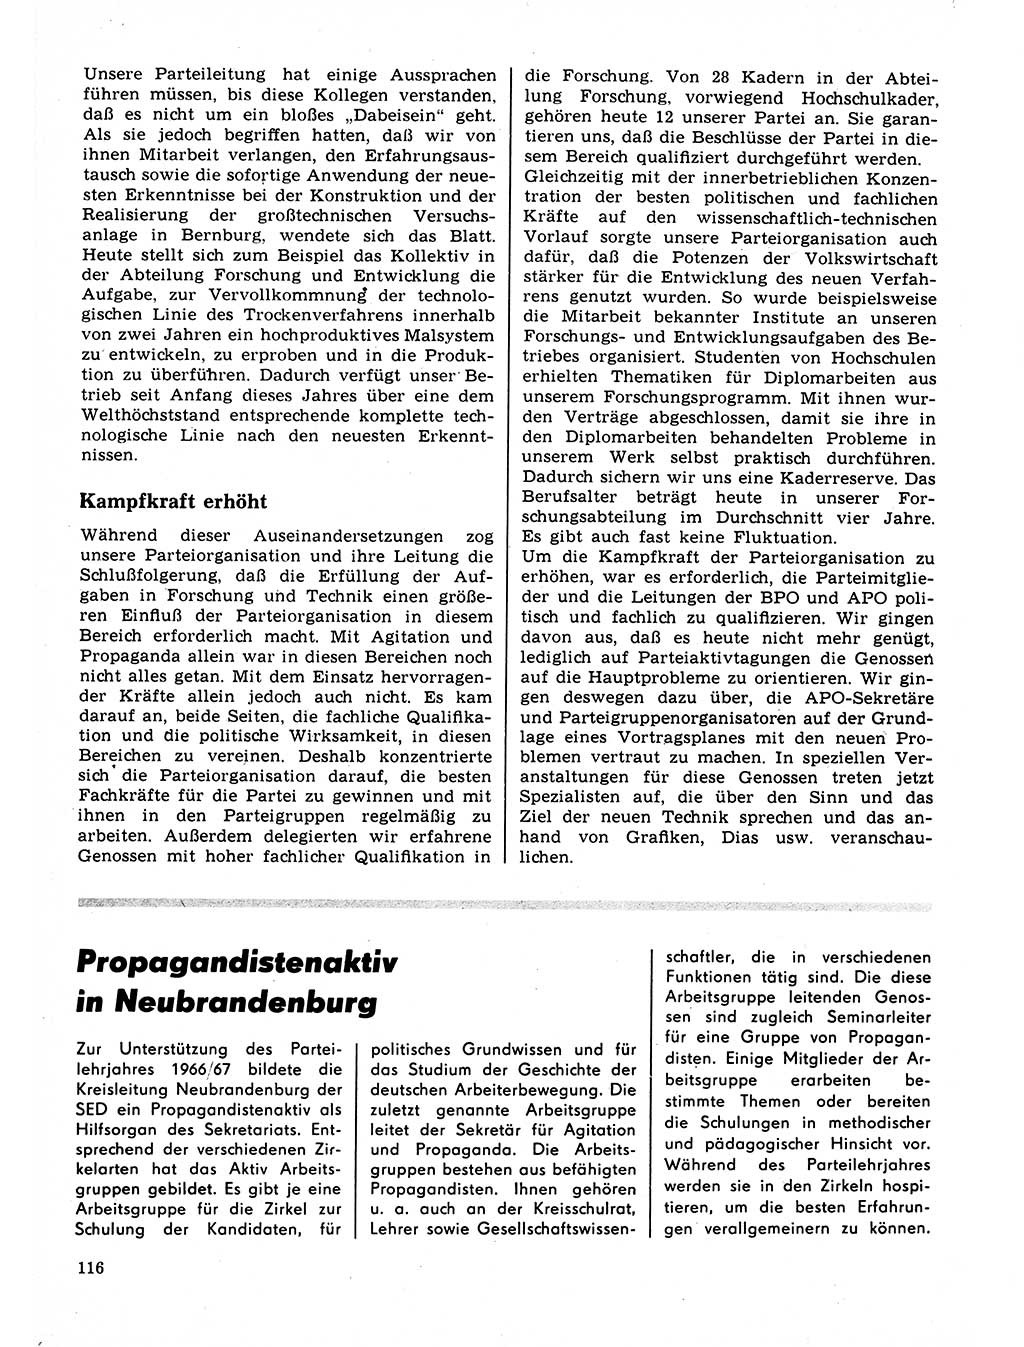 Neuer Weg (NW), Organ des Zentralkomitees (ZK) der SED (Sozialistische Einheitspartei Deutschlands) für Fragen des Parteilebens, 22. Jahrgang [Deutsche Demokratische Republik (DDR)] 1967, Seite 116 (NW ZK SED DDR 1967, S. 116)